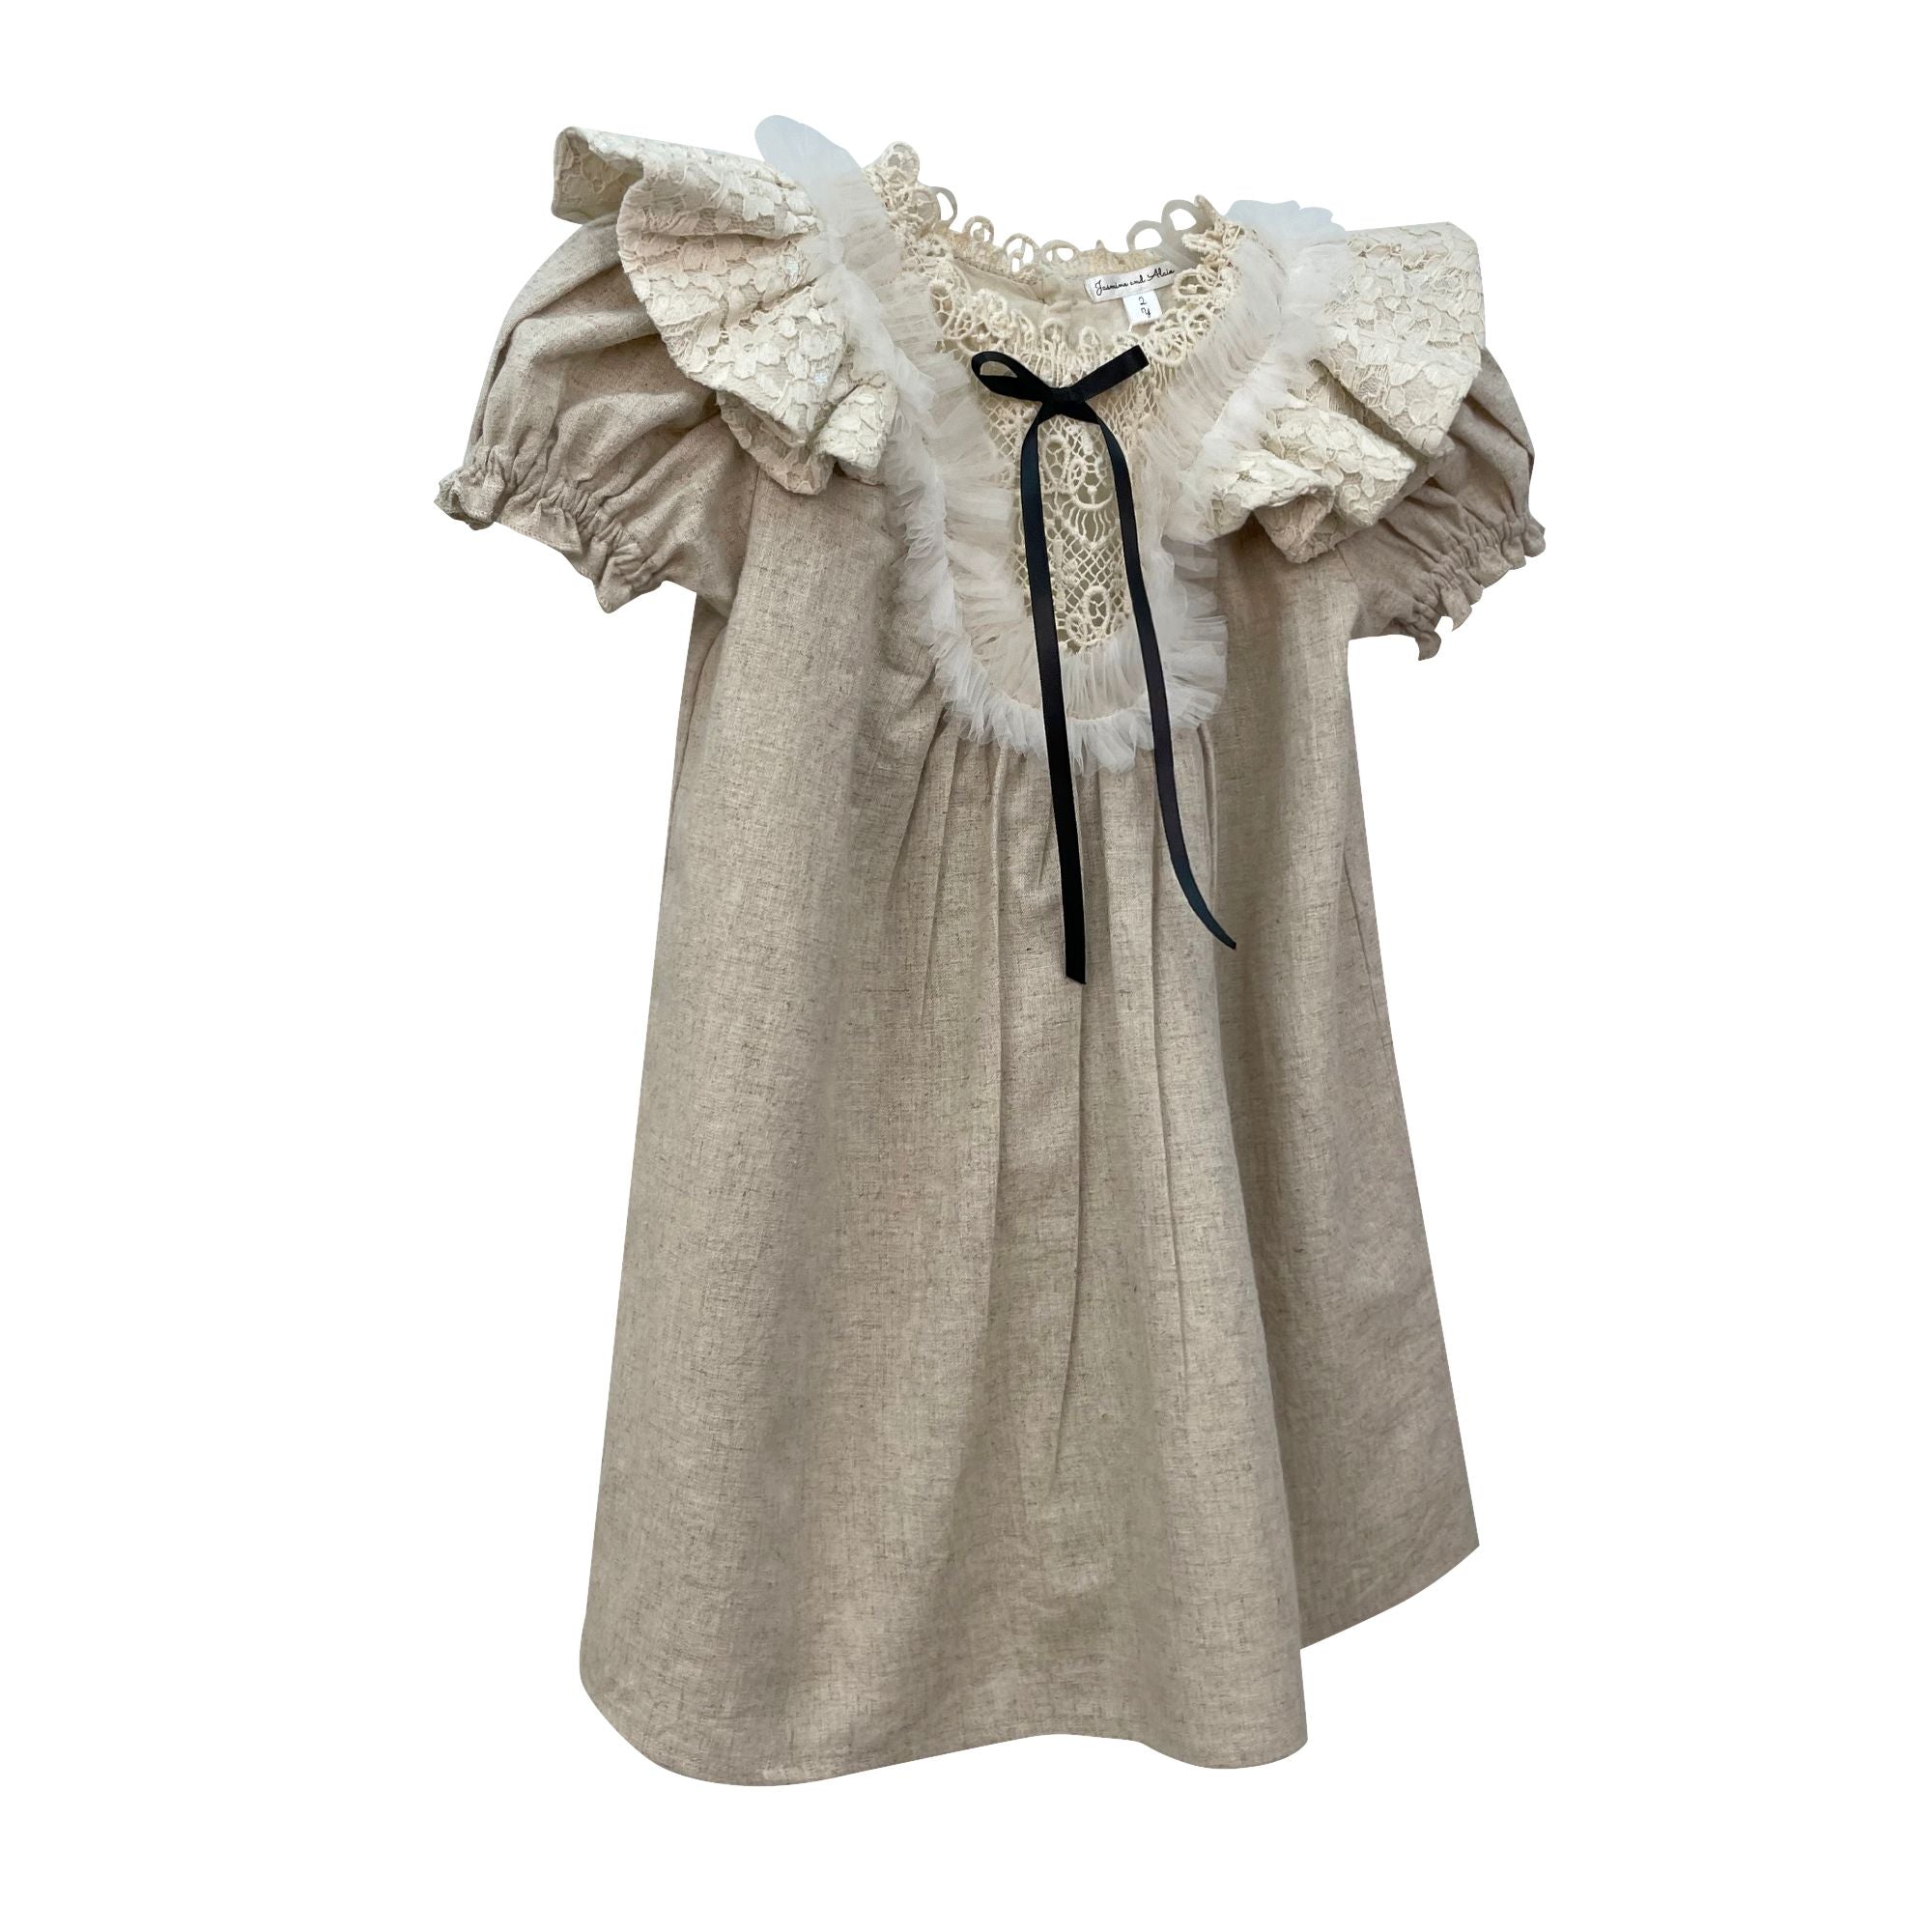 The Rachel Linen Dress